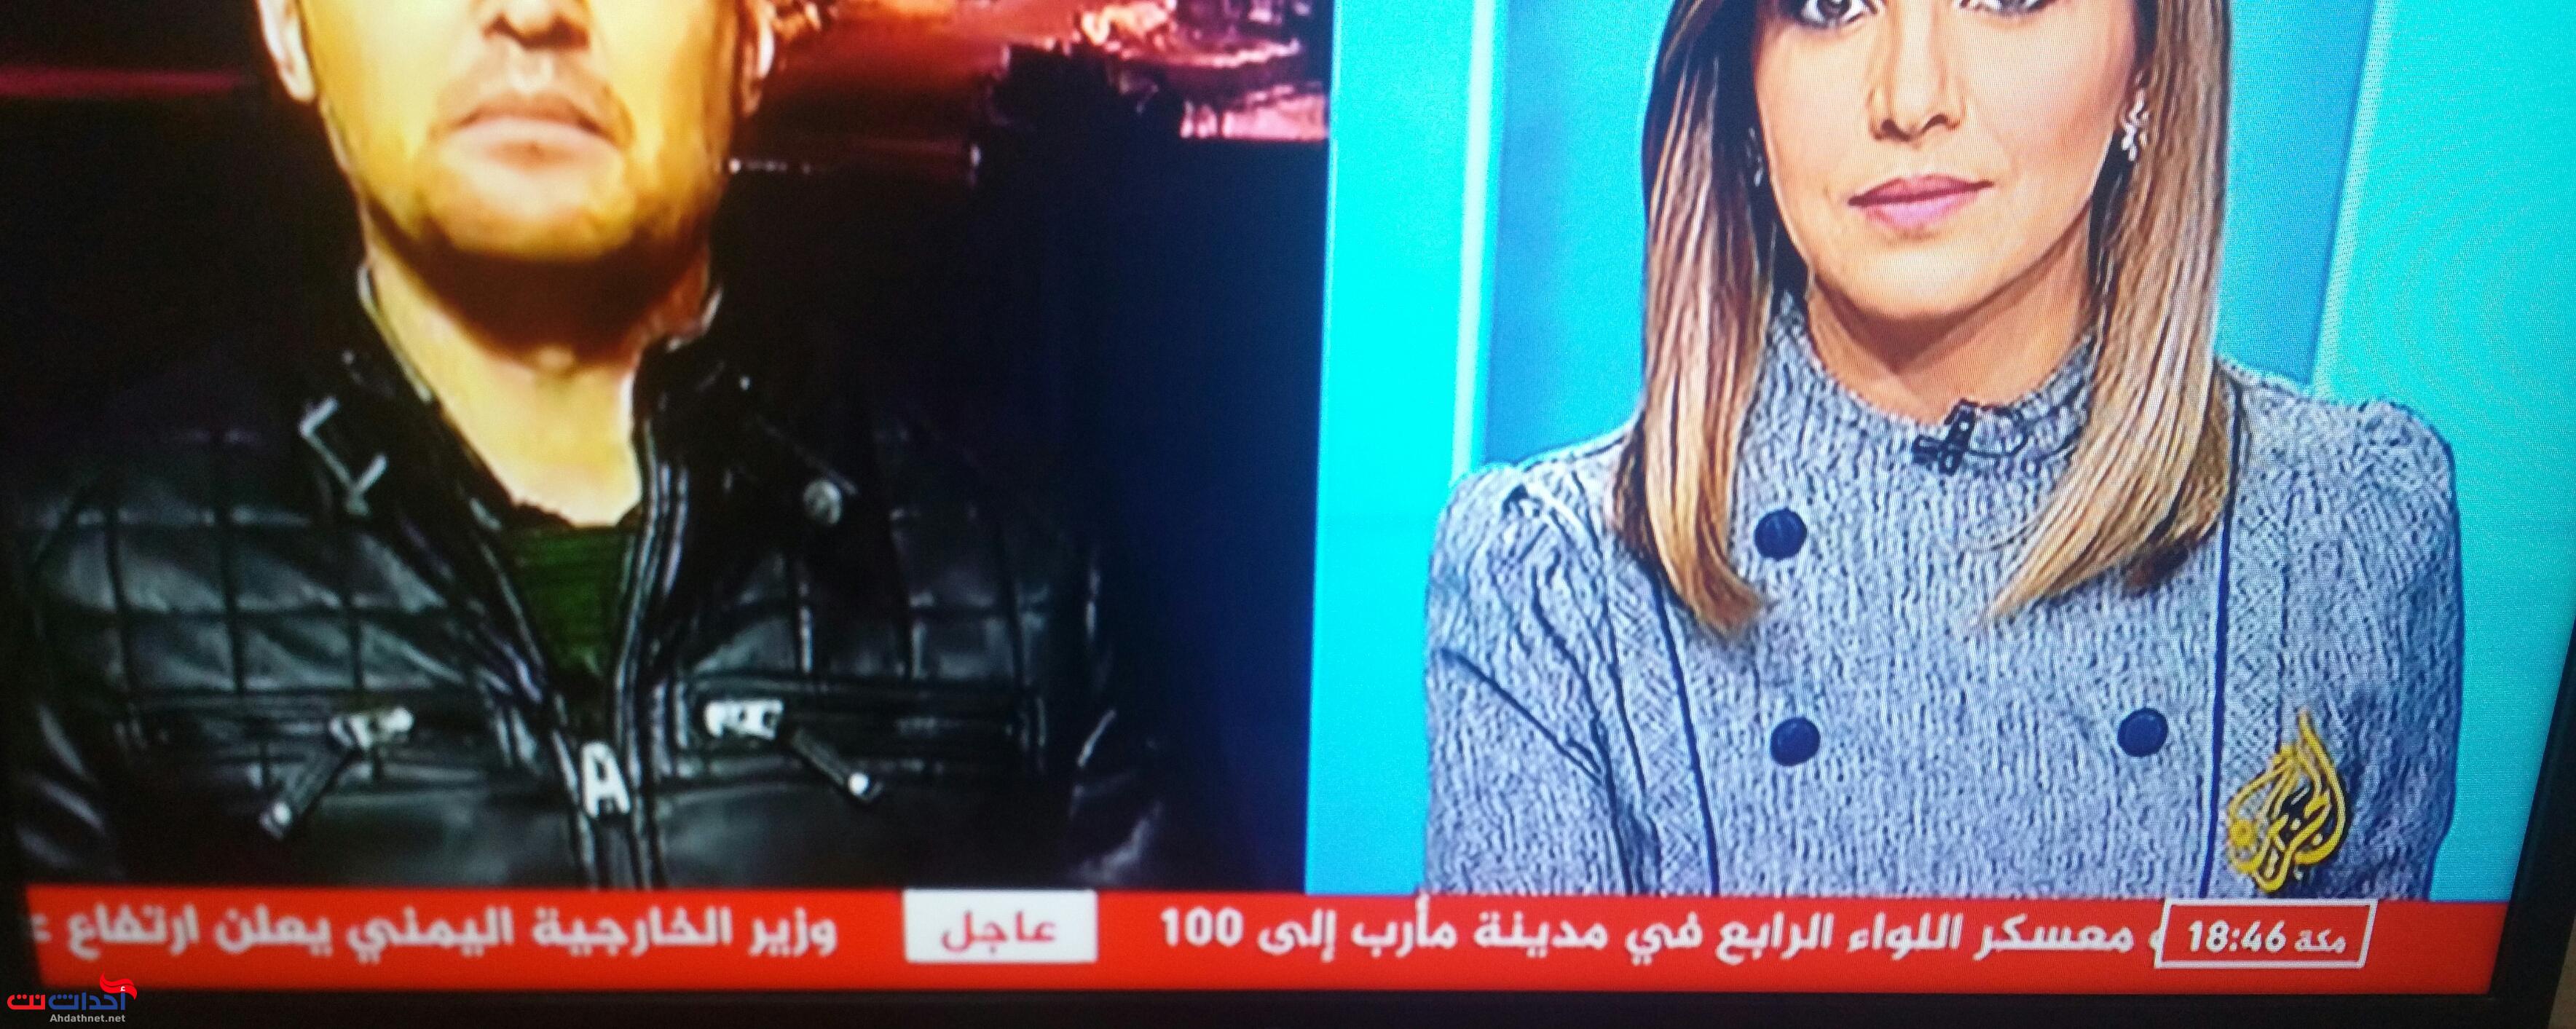 عـــاجل : قناة الجزيرة تبث خبر مفاجئ بشأن مذبحة مأرب يصدم كل اليمنيين  .. 